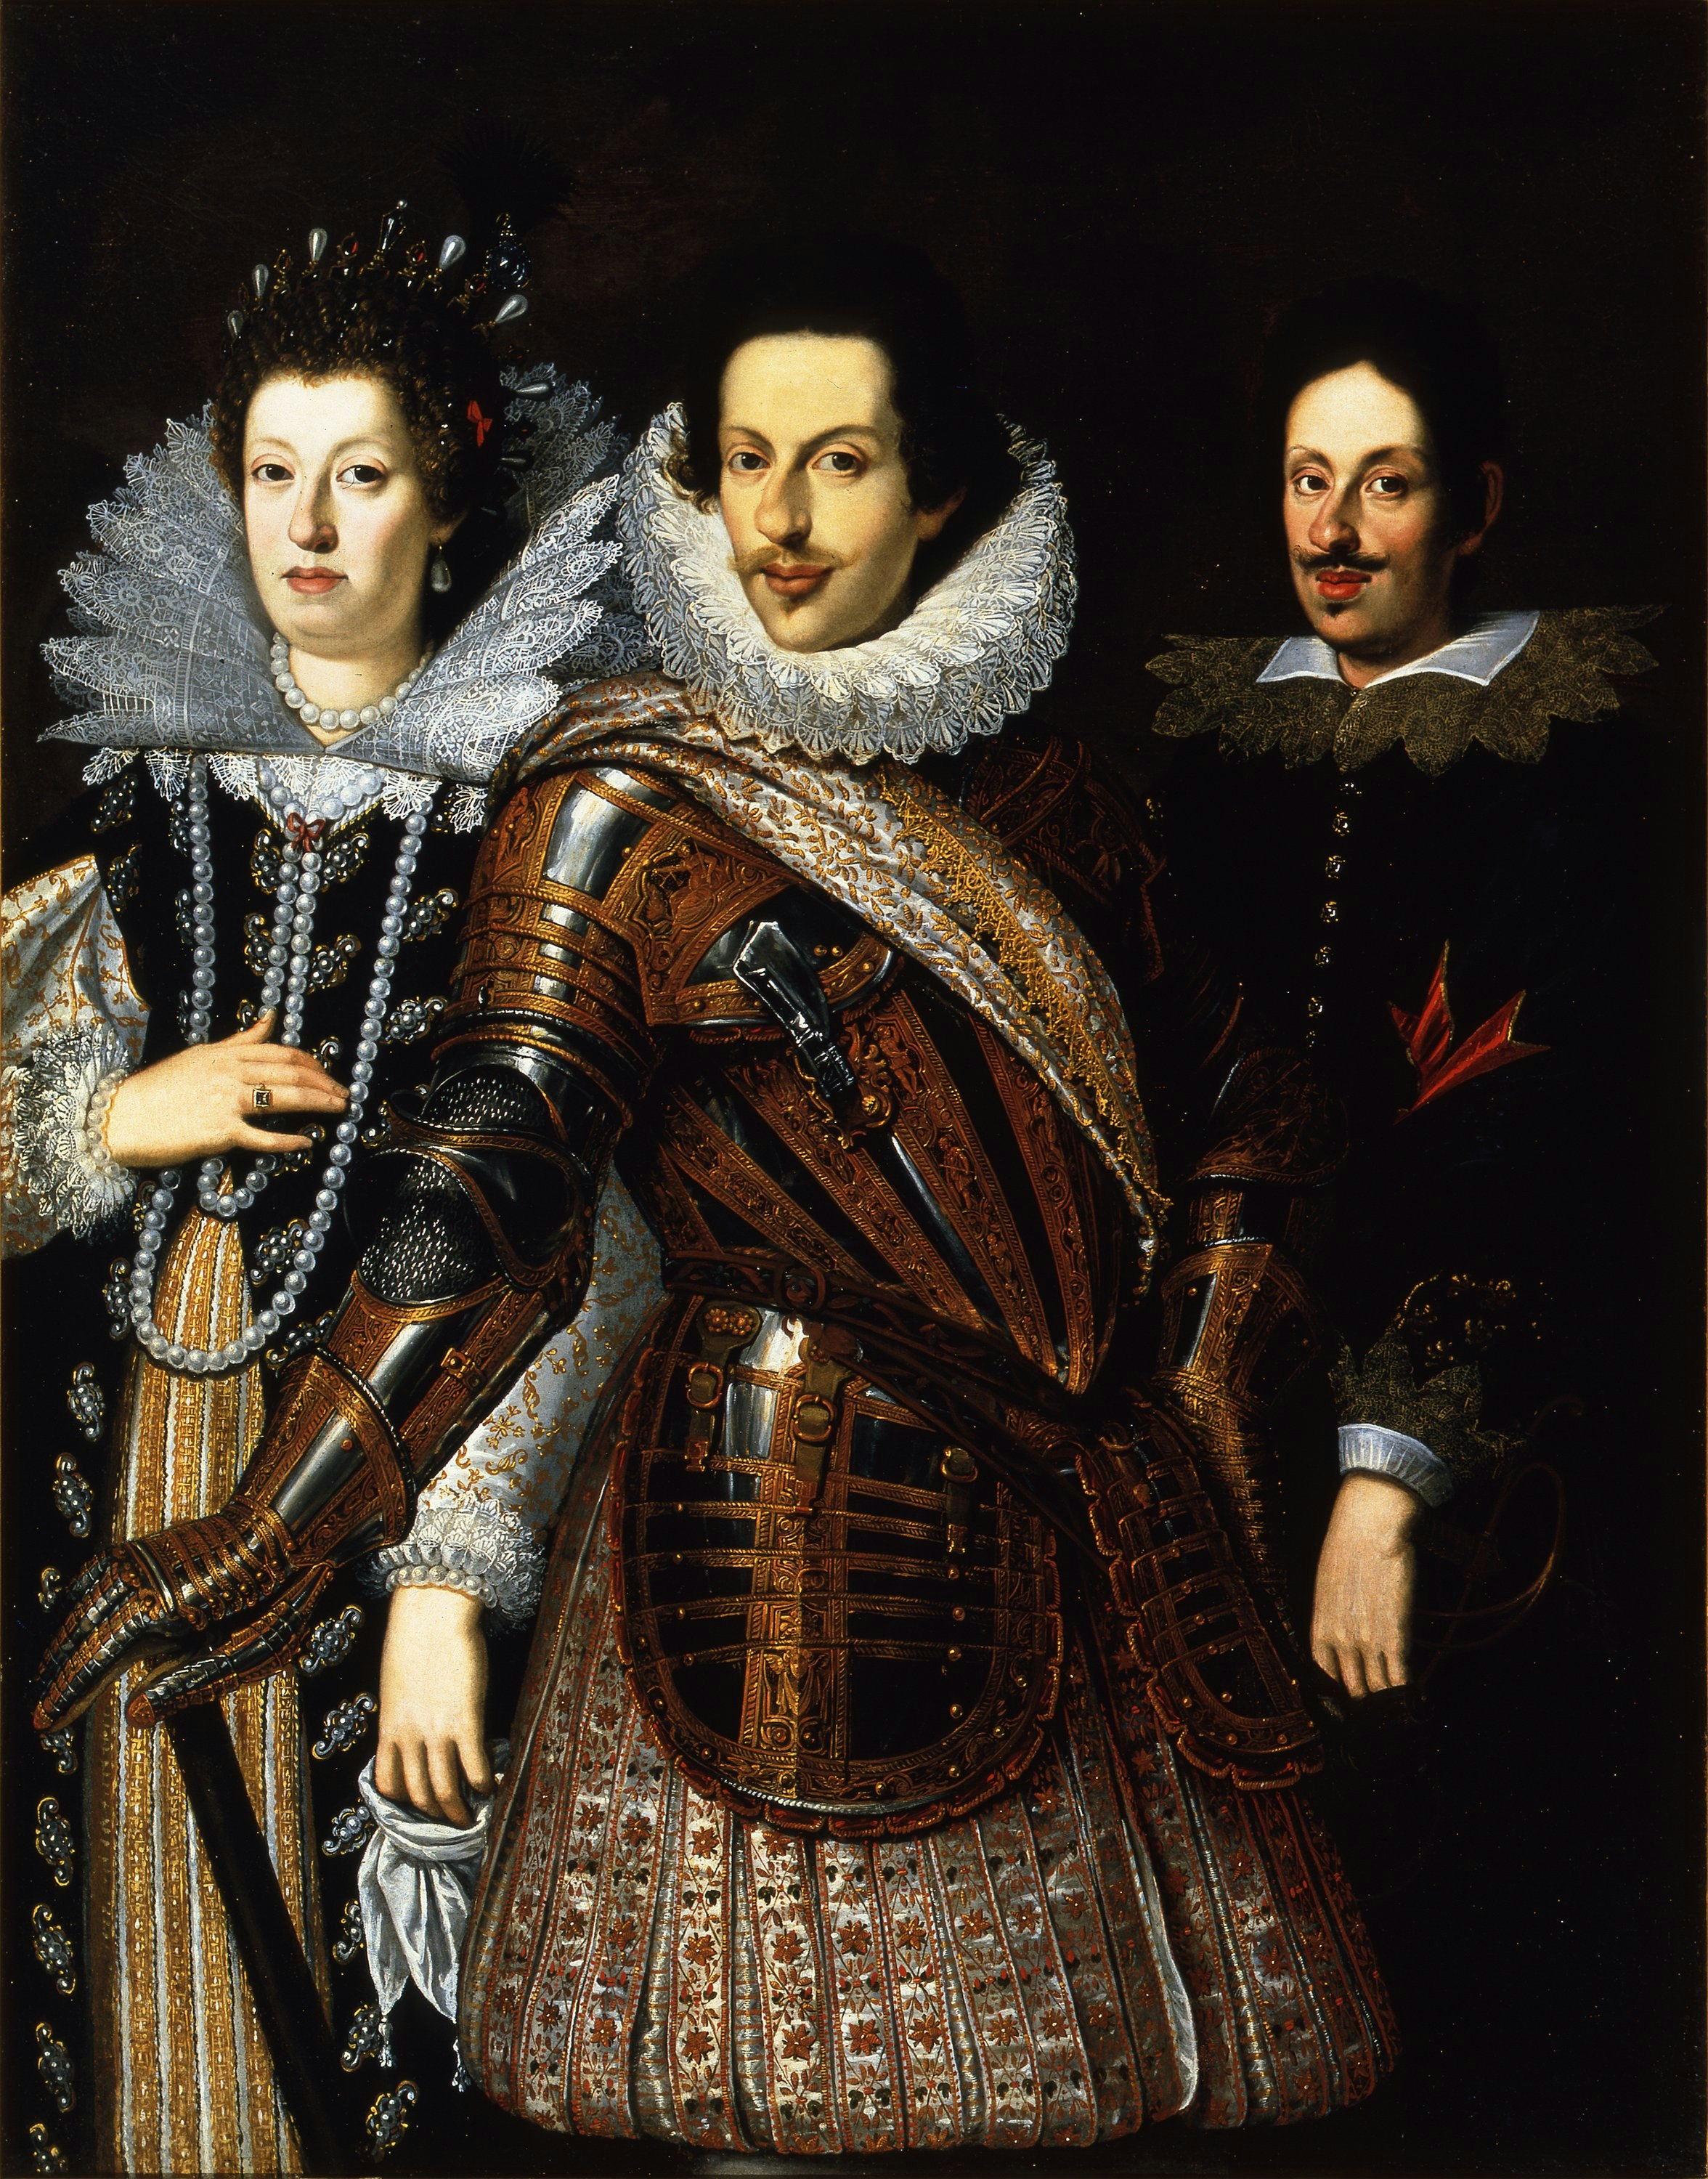 Cosimo II de’ Medici with his wife, Maria Maddalena of Austria  and their son, Ferdinando II